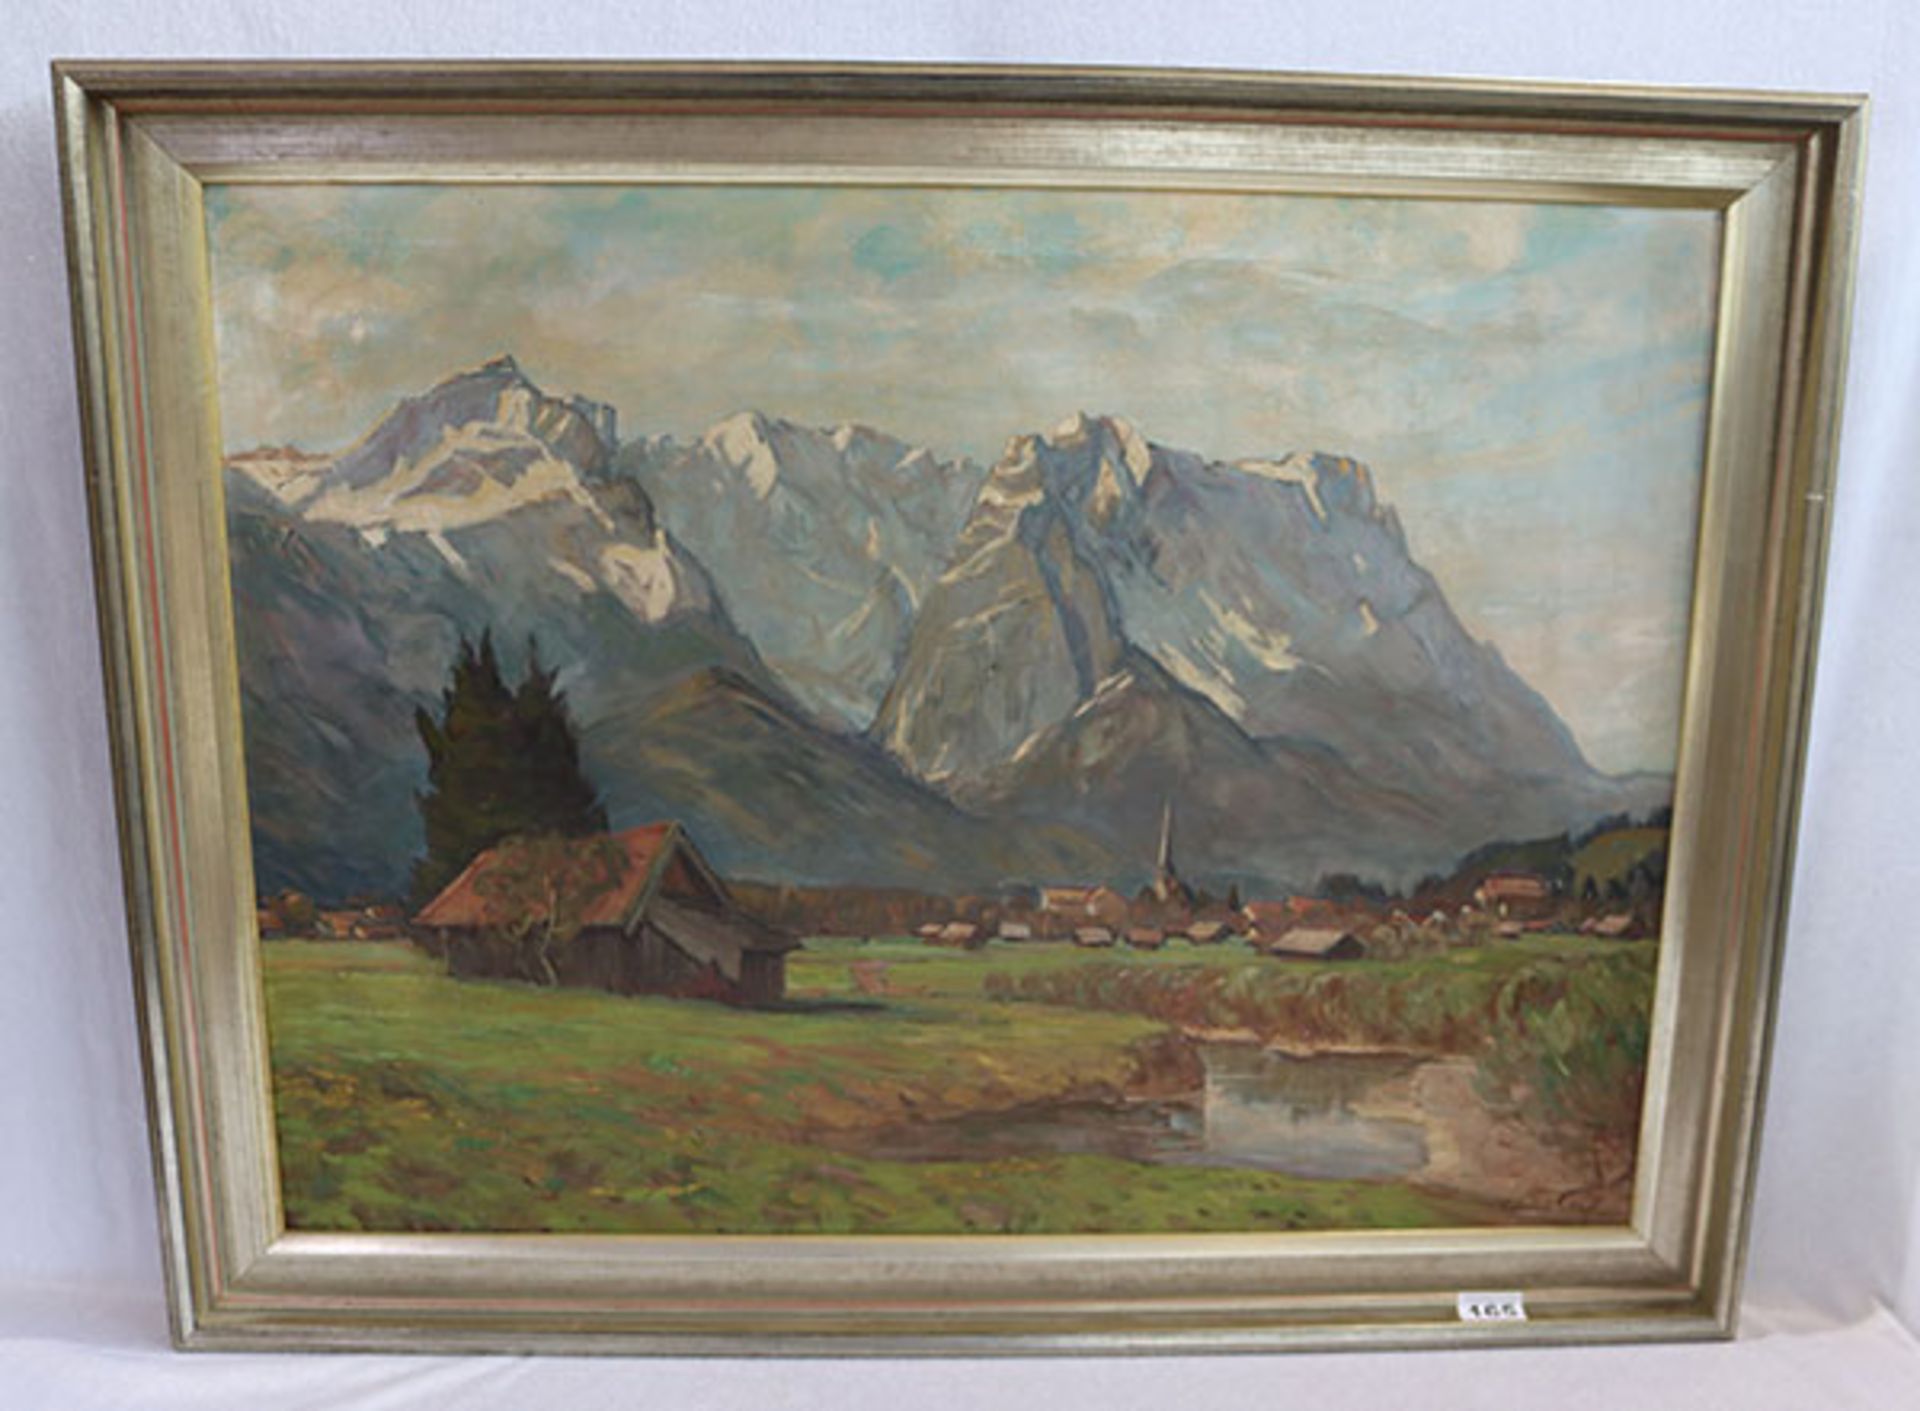 Gemälde ÖL/LW 'Garmisch vor Wettersteingebirge', signiert Edmund Senft, München, * 1880 + 1964